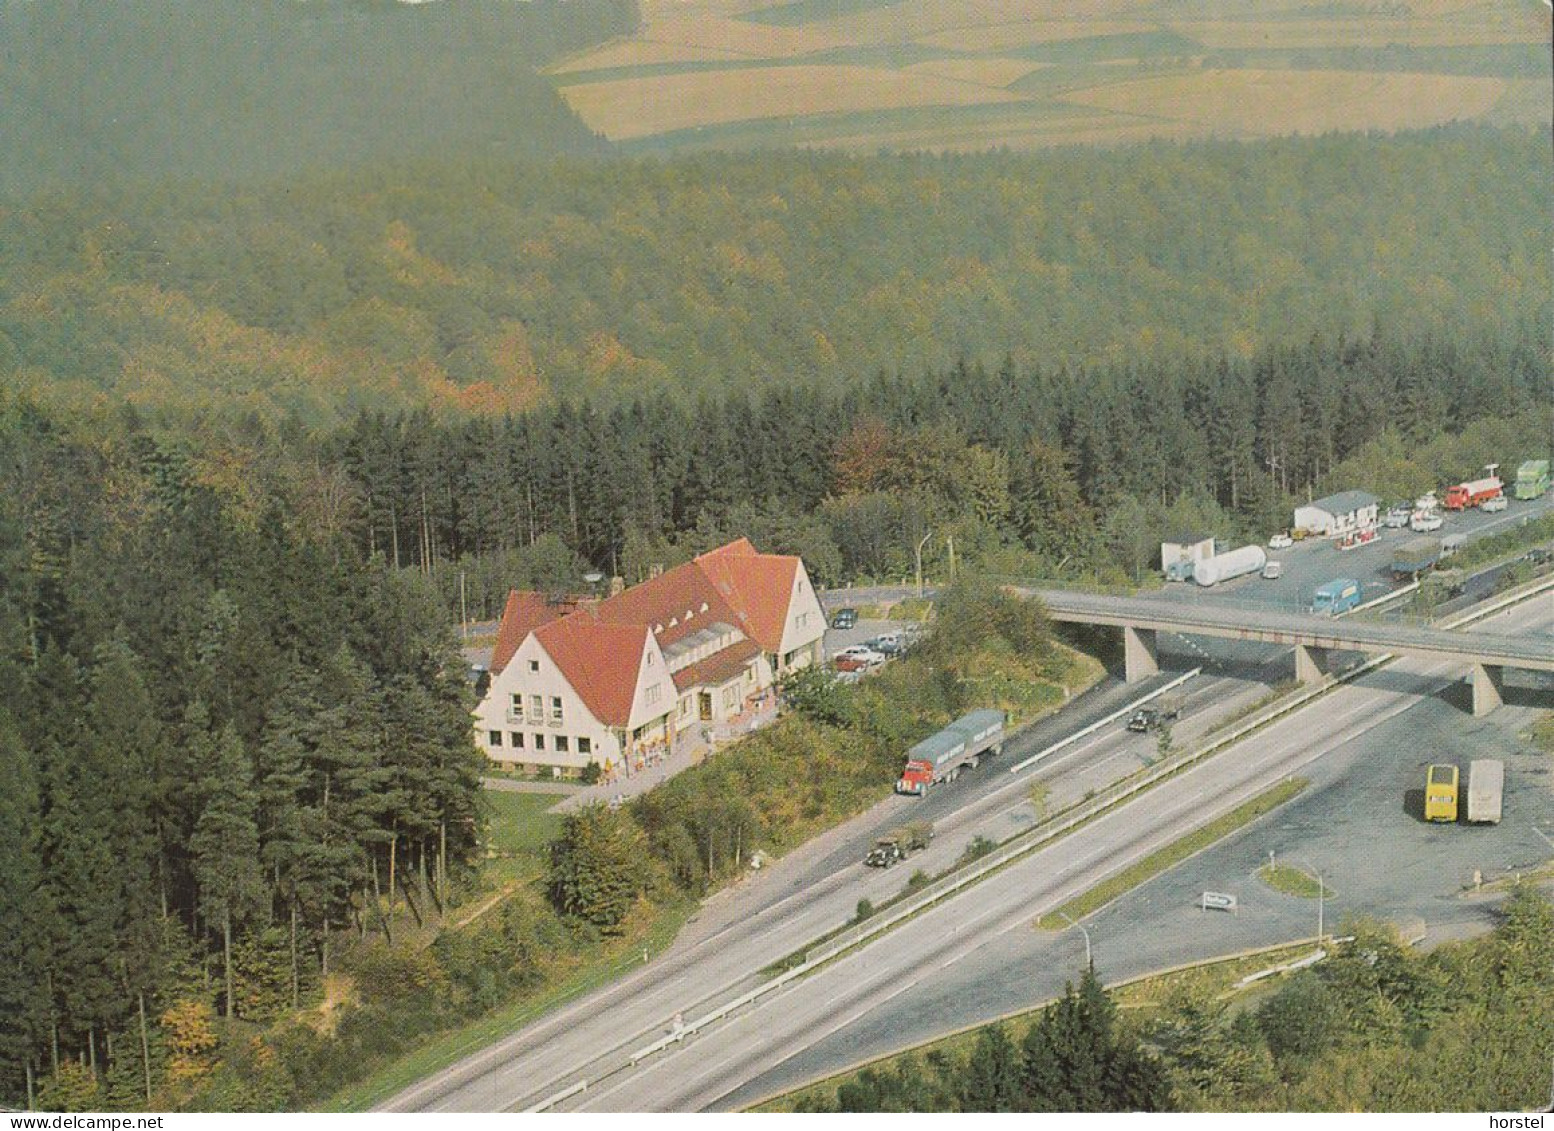 D-36287 Breitenbach A. Herzberg - Autobahn - Rimberg - Rasthaus - Tankstelle - Militärkonvoi - LKW - Luftbild - Bad Hersfeld